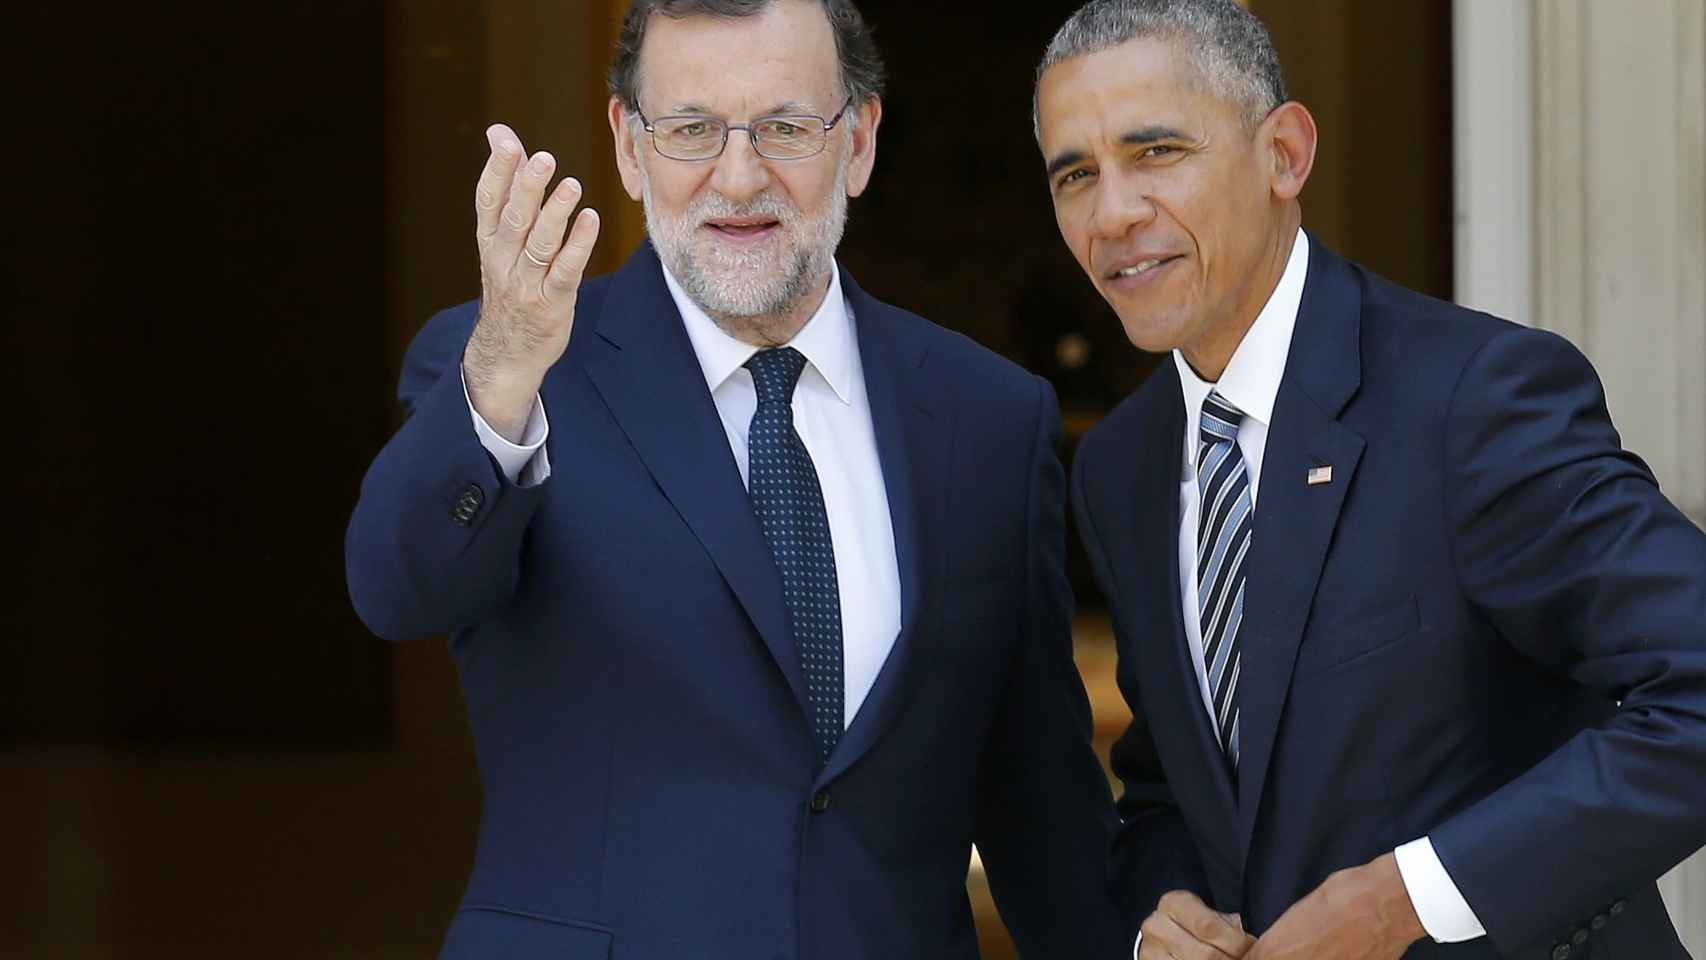 Mariano Rajoy y Barack Obama, durante su encuentro en la Moncloa.